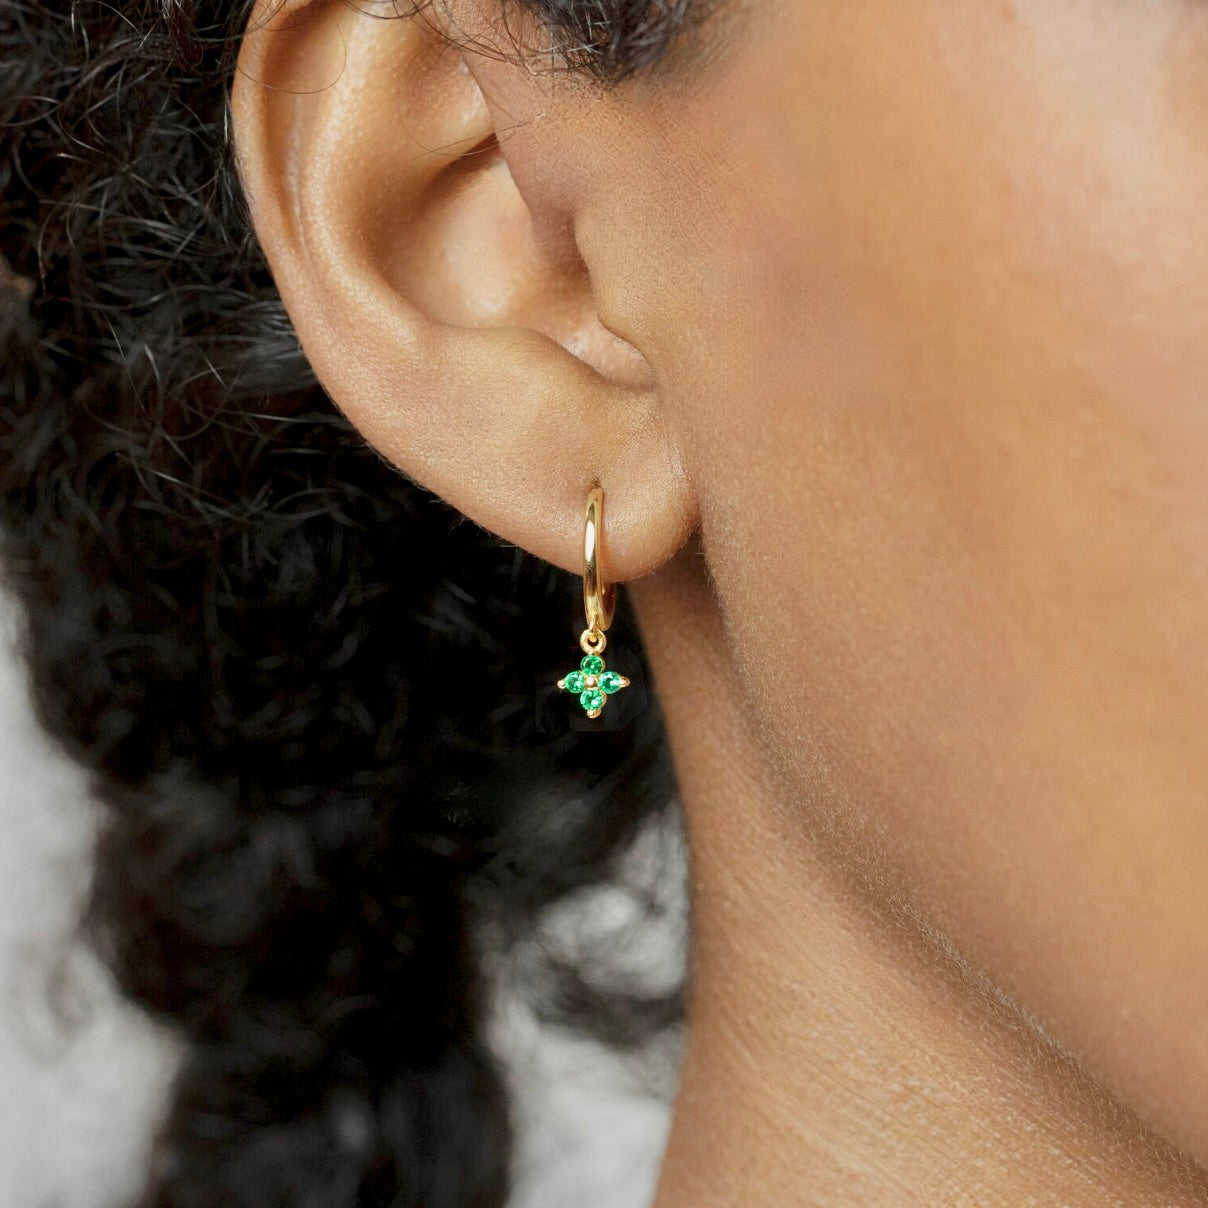 my tiny tiny clover earrings